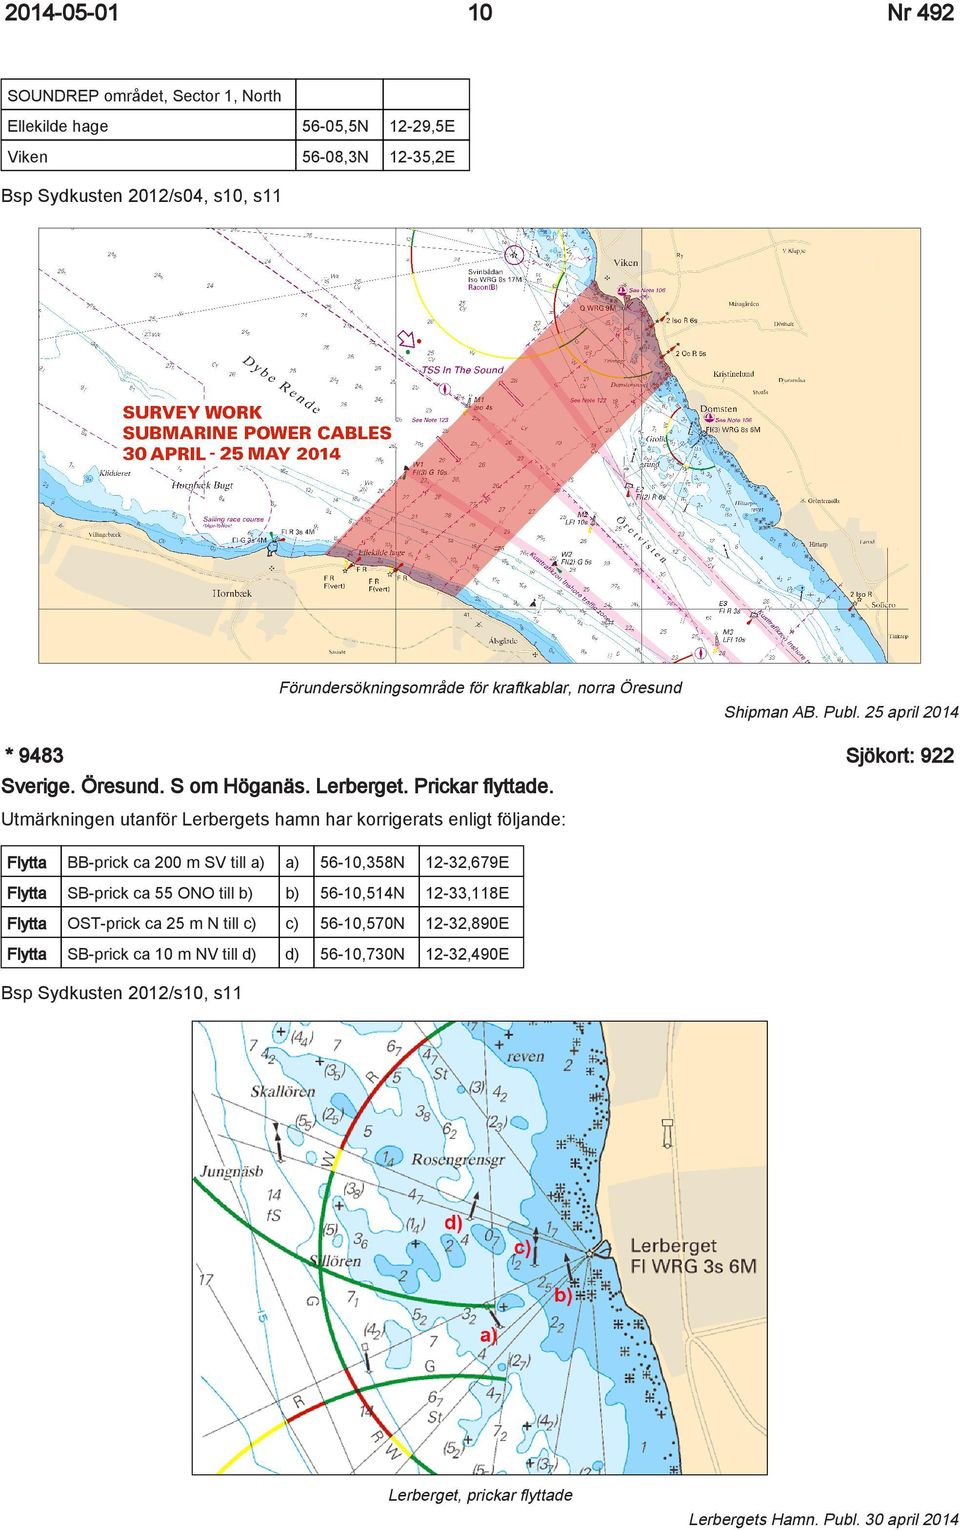 Utmärkningen utanför Lerbergets hamn har korrigerats enligt följande: Flytta BB-prick ca 200 m SV till a) a) 56-10,358N 12-32,679E Flytta SB-prick ca 55 ONO till b) b) 56-10,514N